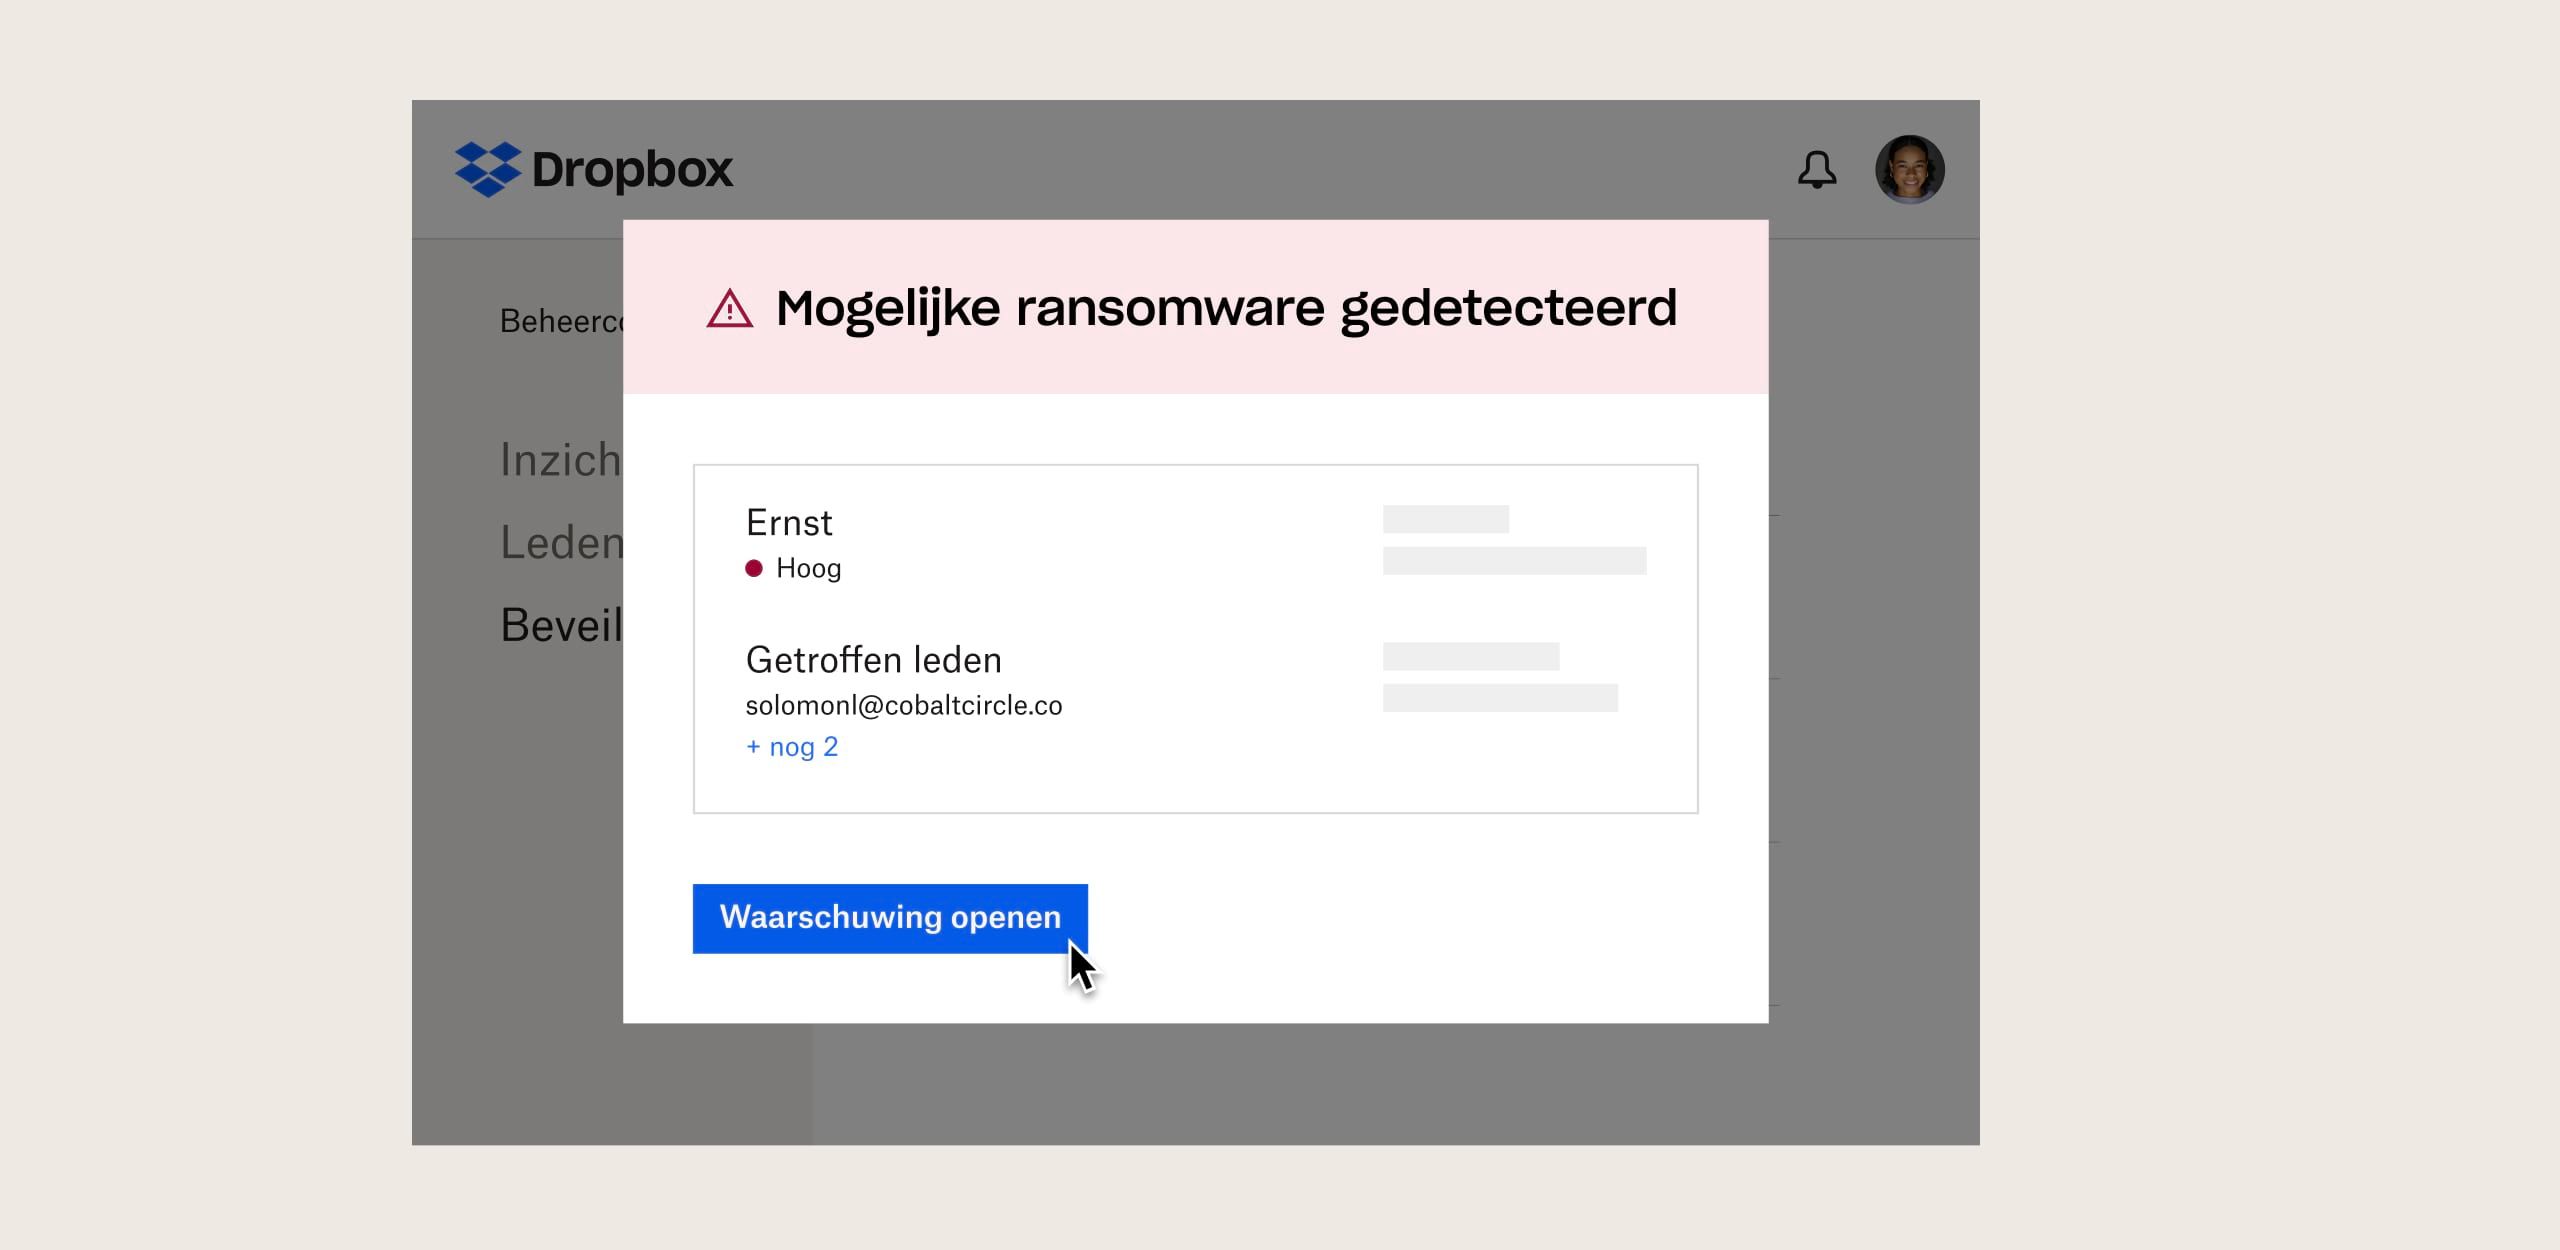 Een gebruiker bekijkt een mogelijke ransomwarebeveiligingsmelding in Dropbox